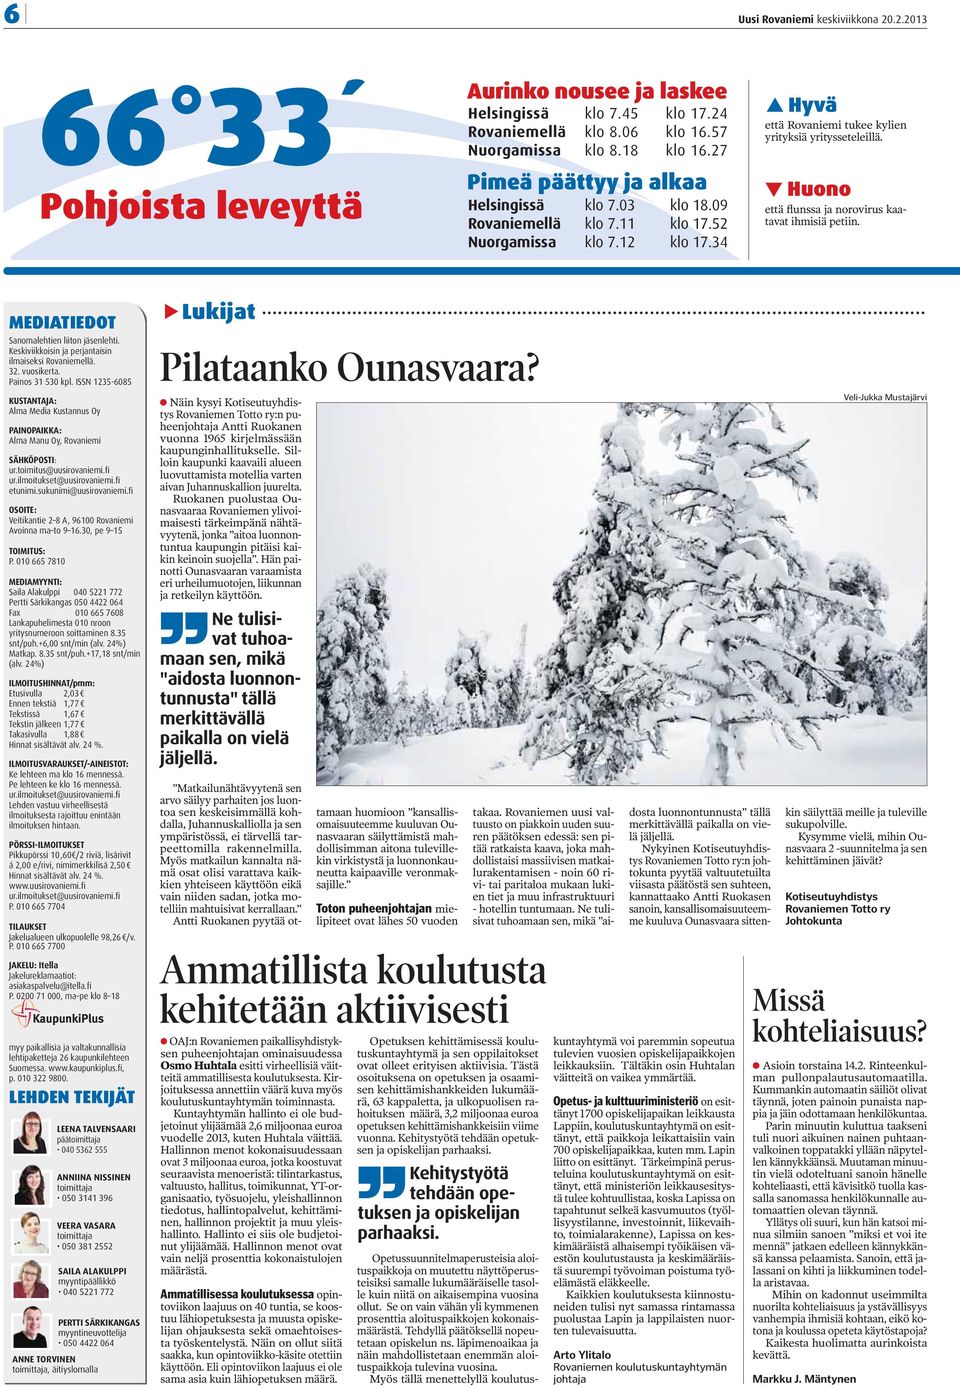 Huono että flunssa ja norovirus kaatavat ihmisiä petiin. MEDIATIEDOT Sanomalehtien liiton jäsenlehti. Keskiviikkoisin ja perjantaisin ilmaiseksi Rovaniemellä. 32. vuosikerta. Painos 31 530 kpl.